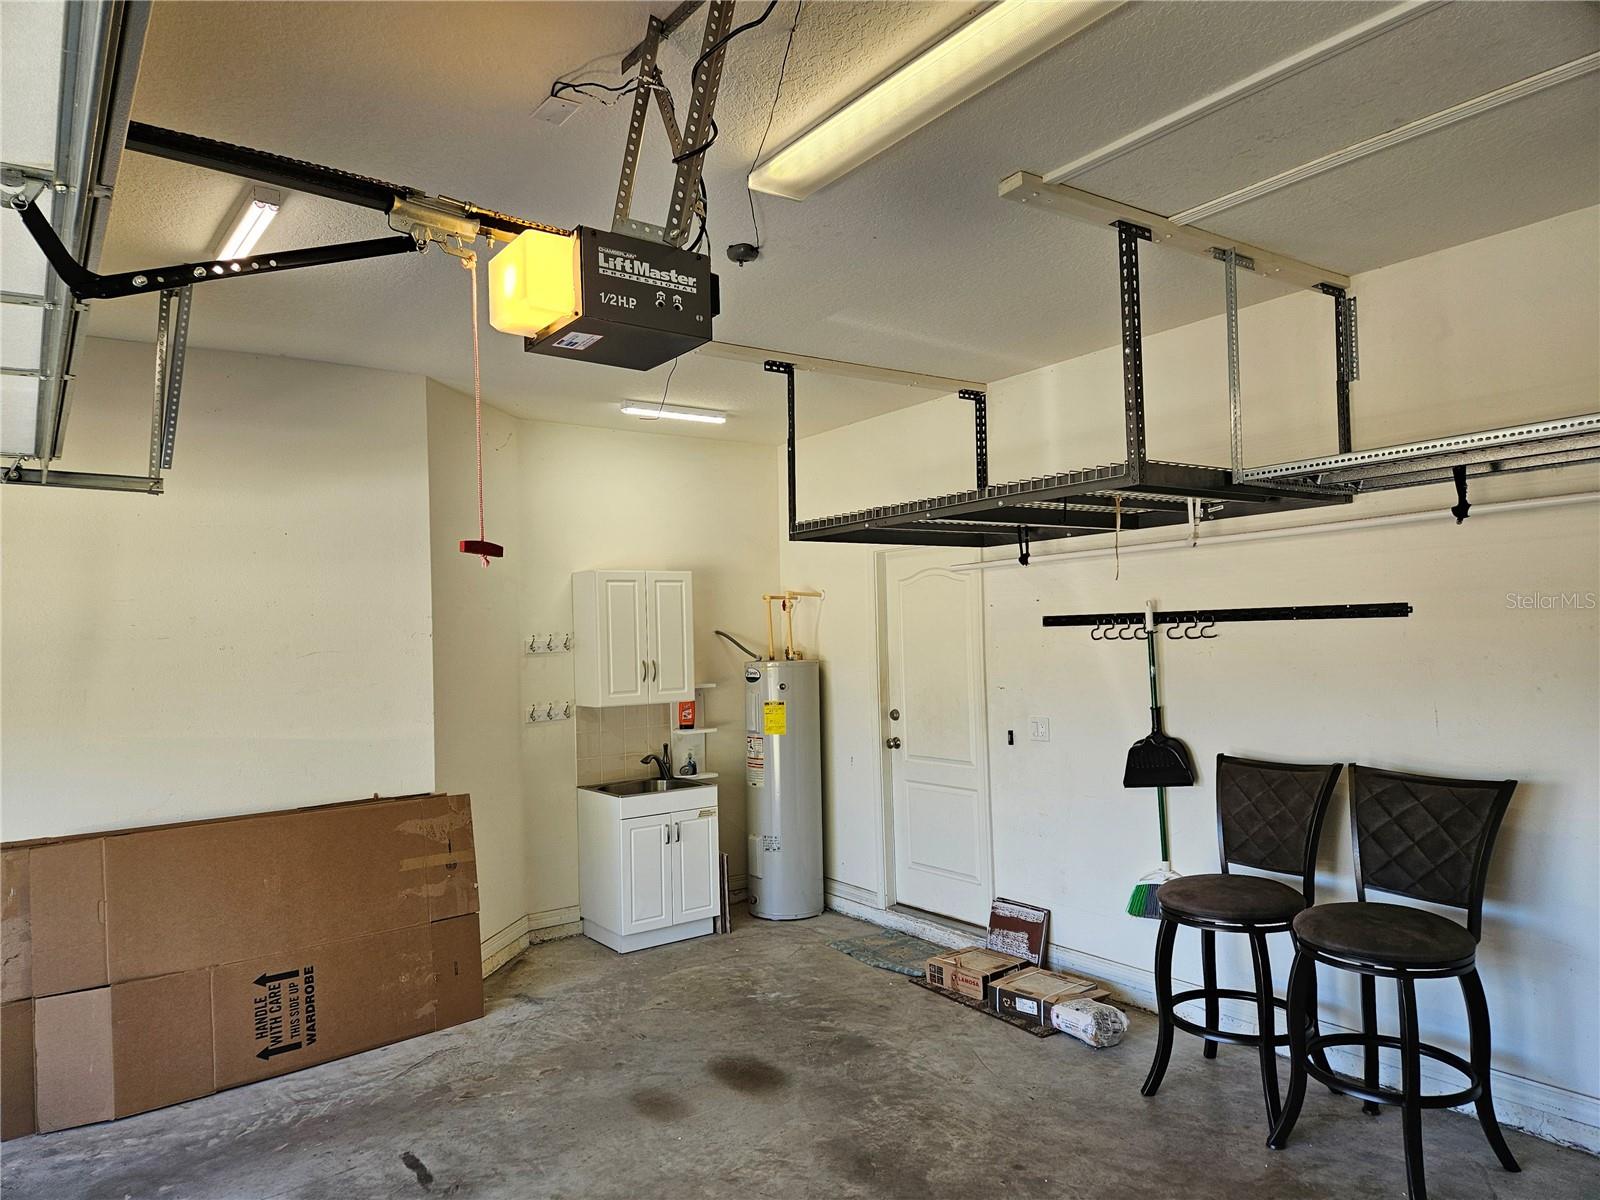 Garage with storage racks